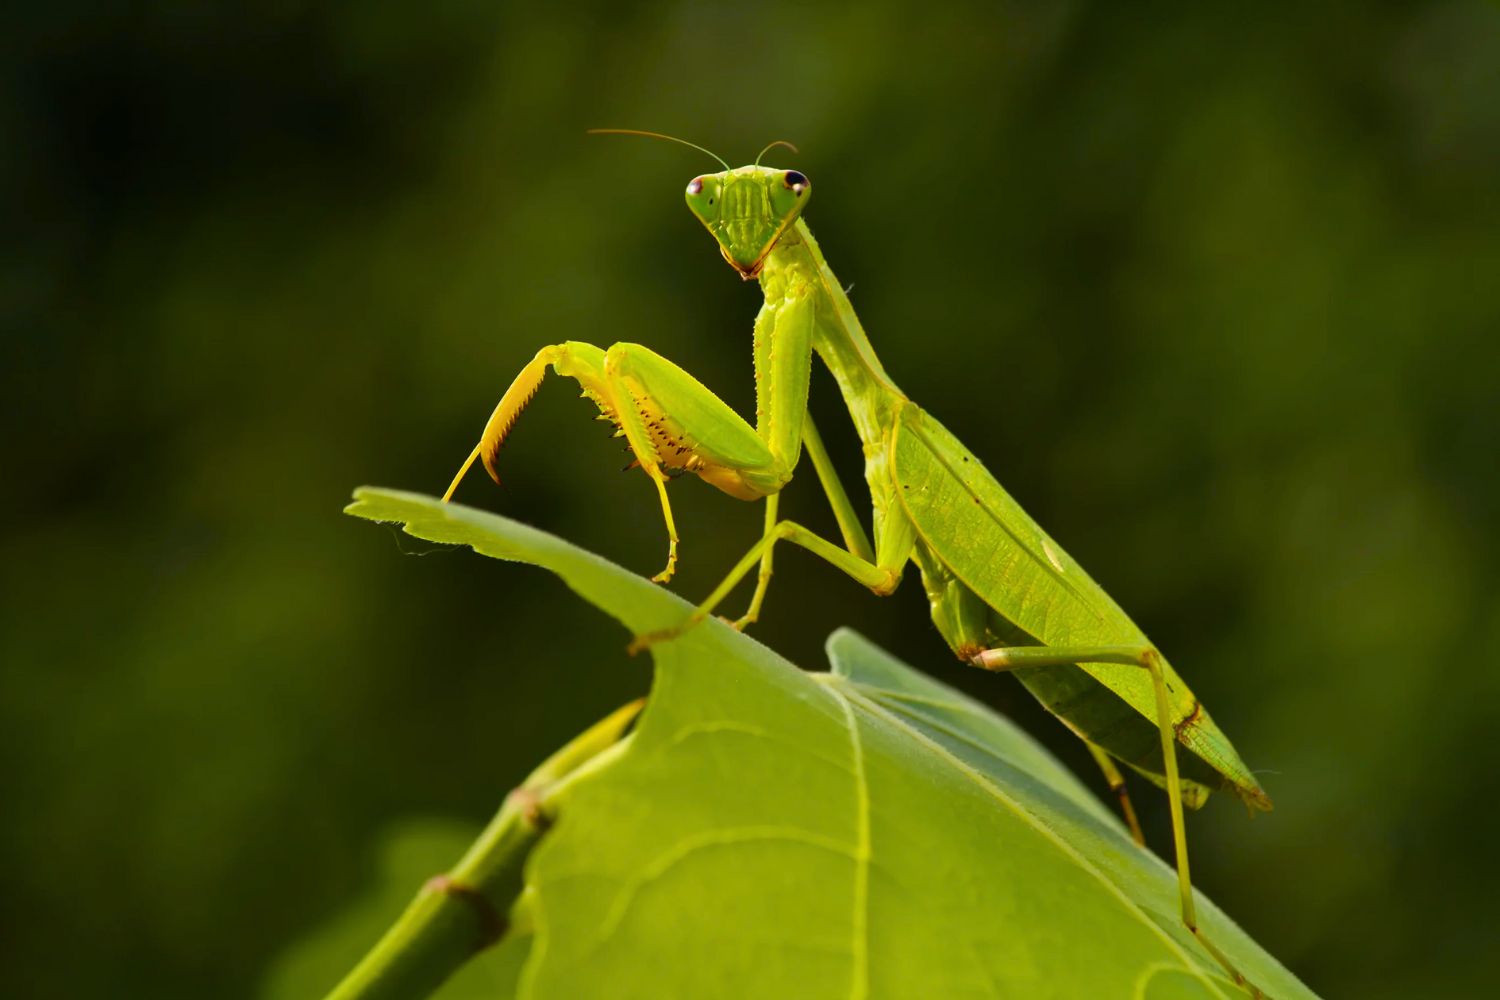 6. Praying Mantis